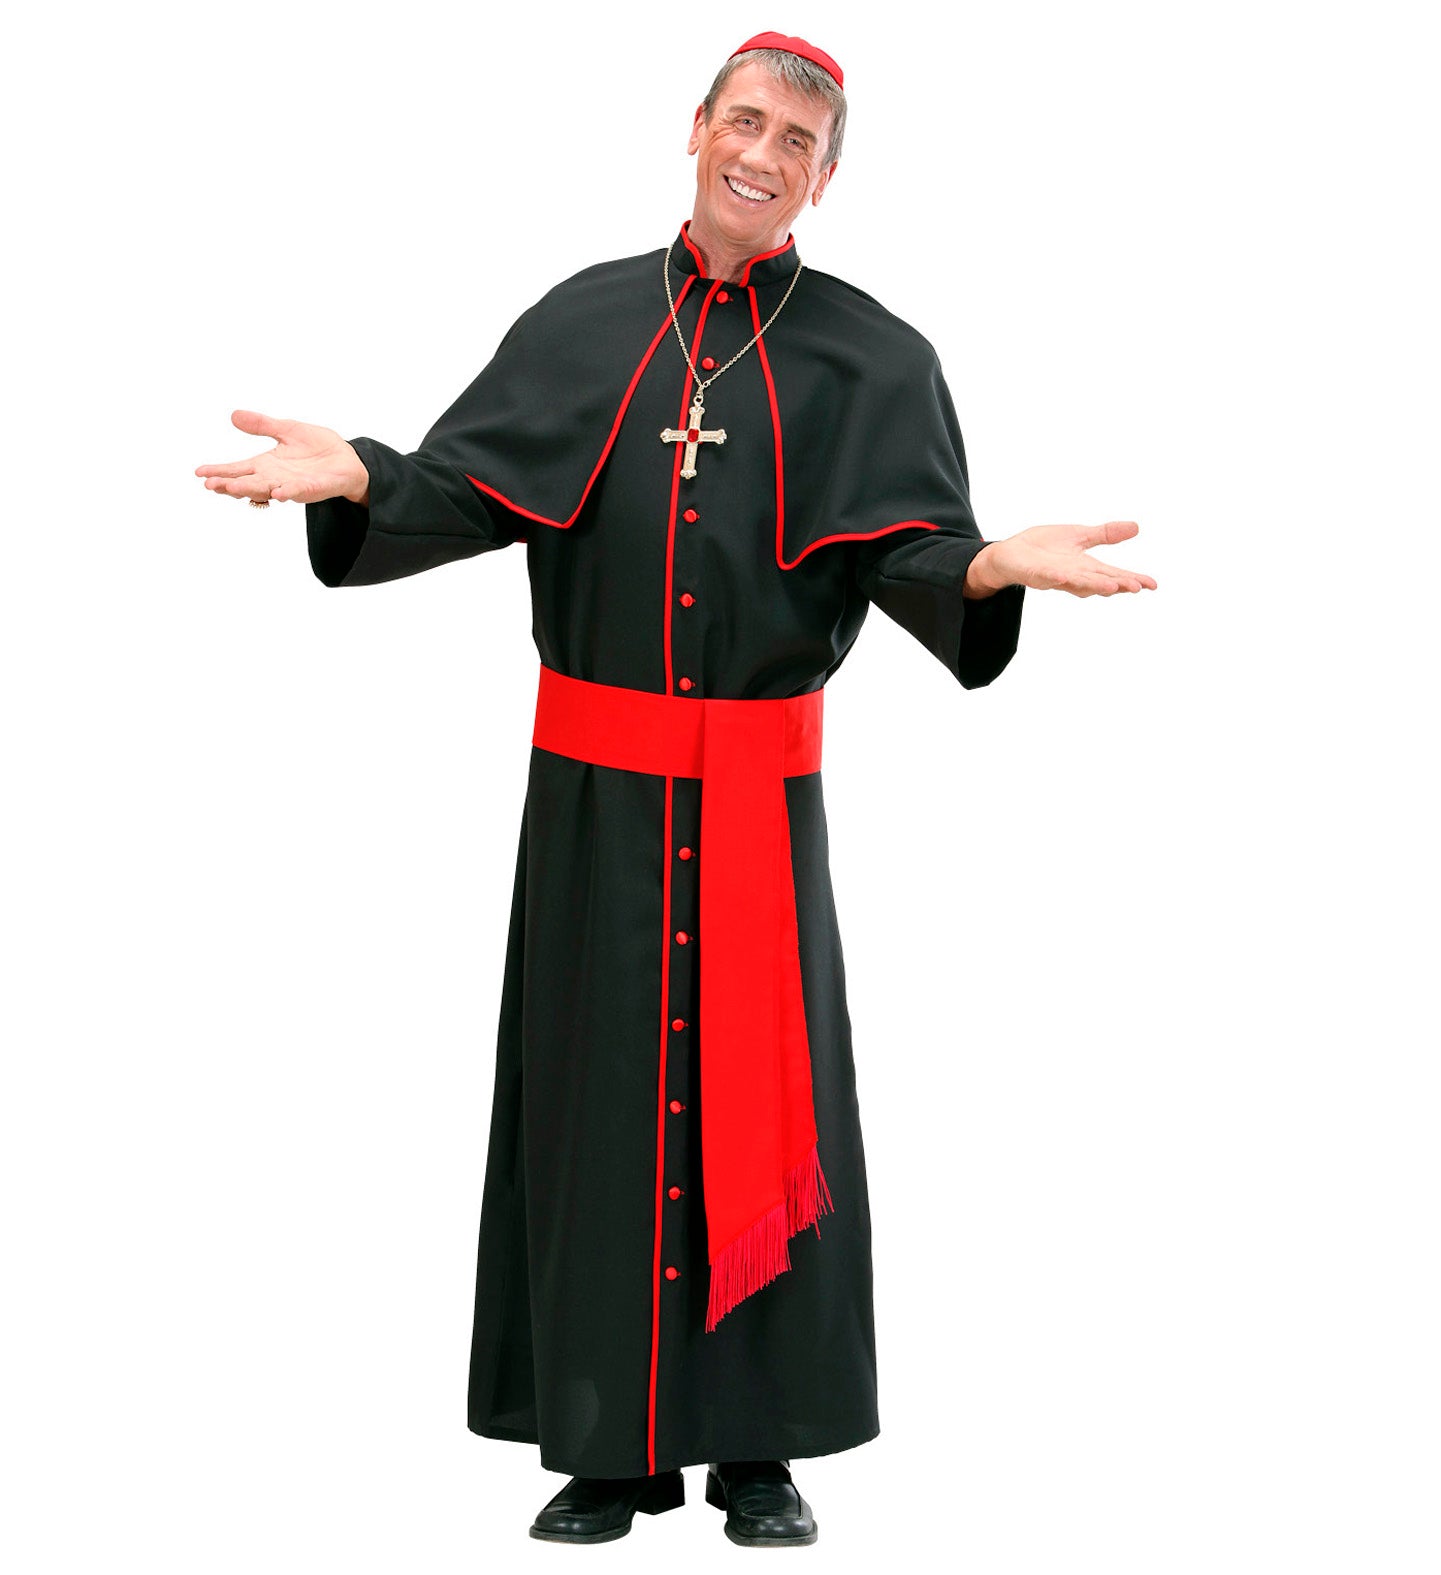 Cardinal outfit Black